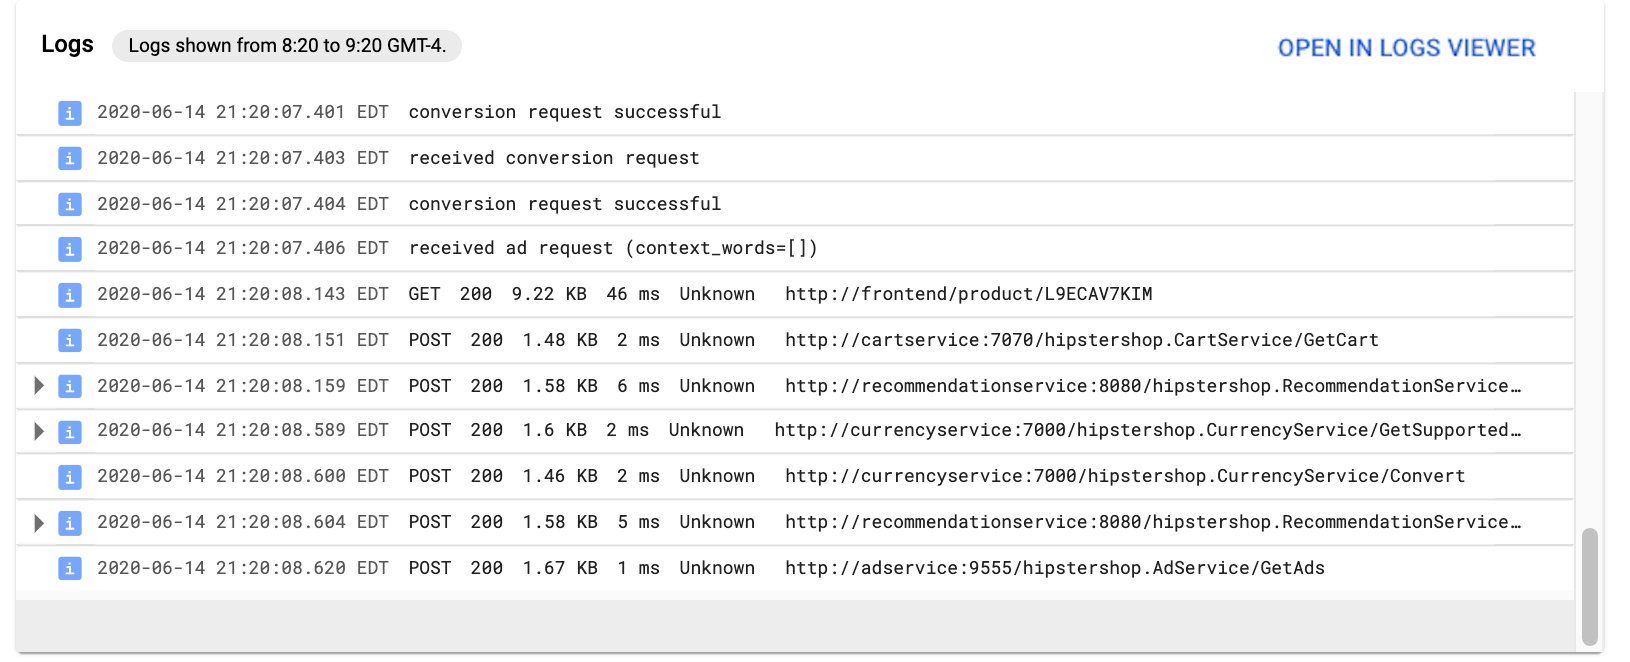 En **Registros**, se muestran las entradas de registro de Cloud Logging que escribió este servicio.